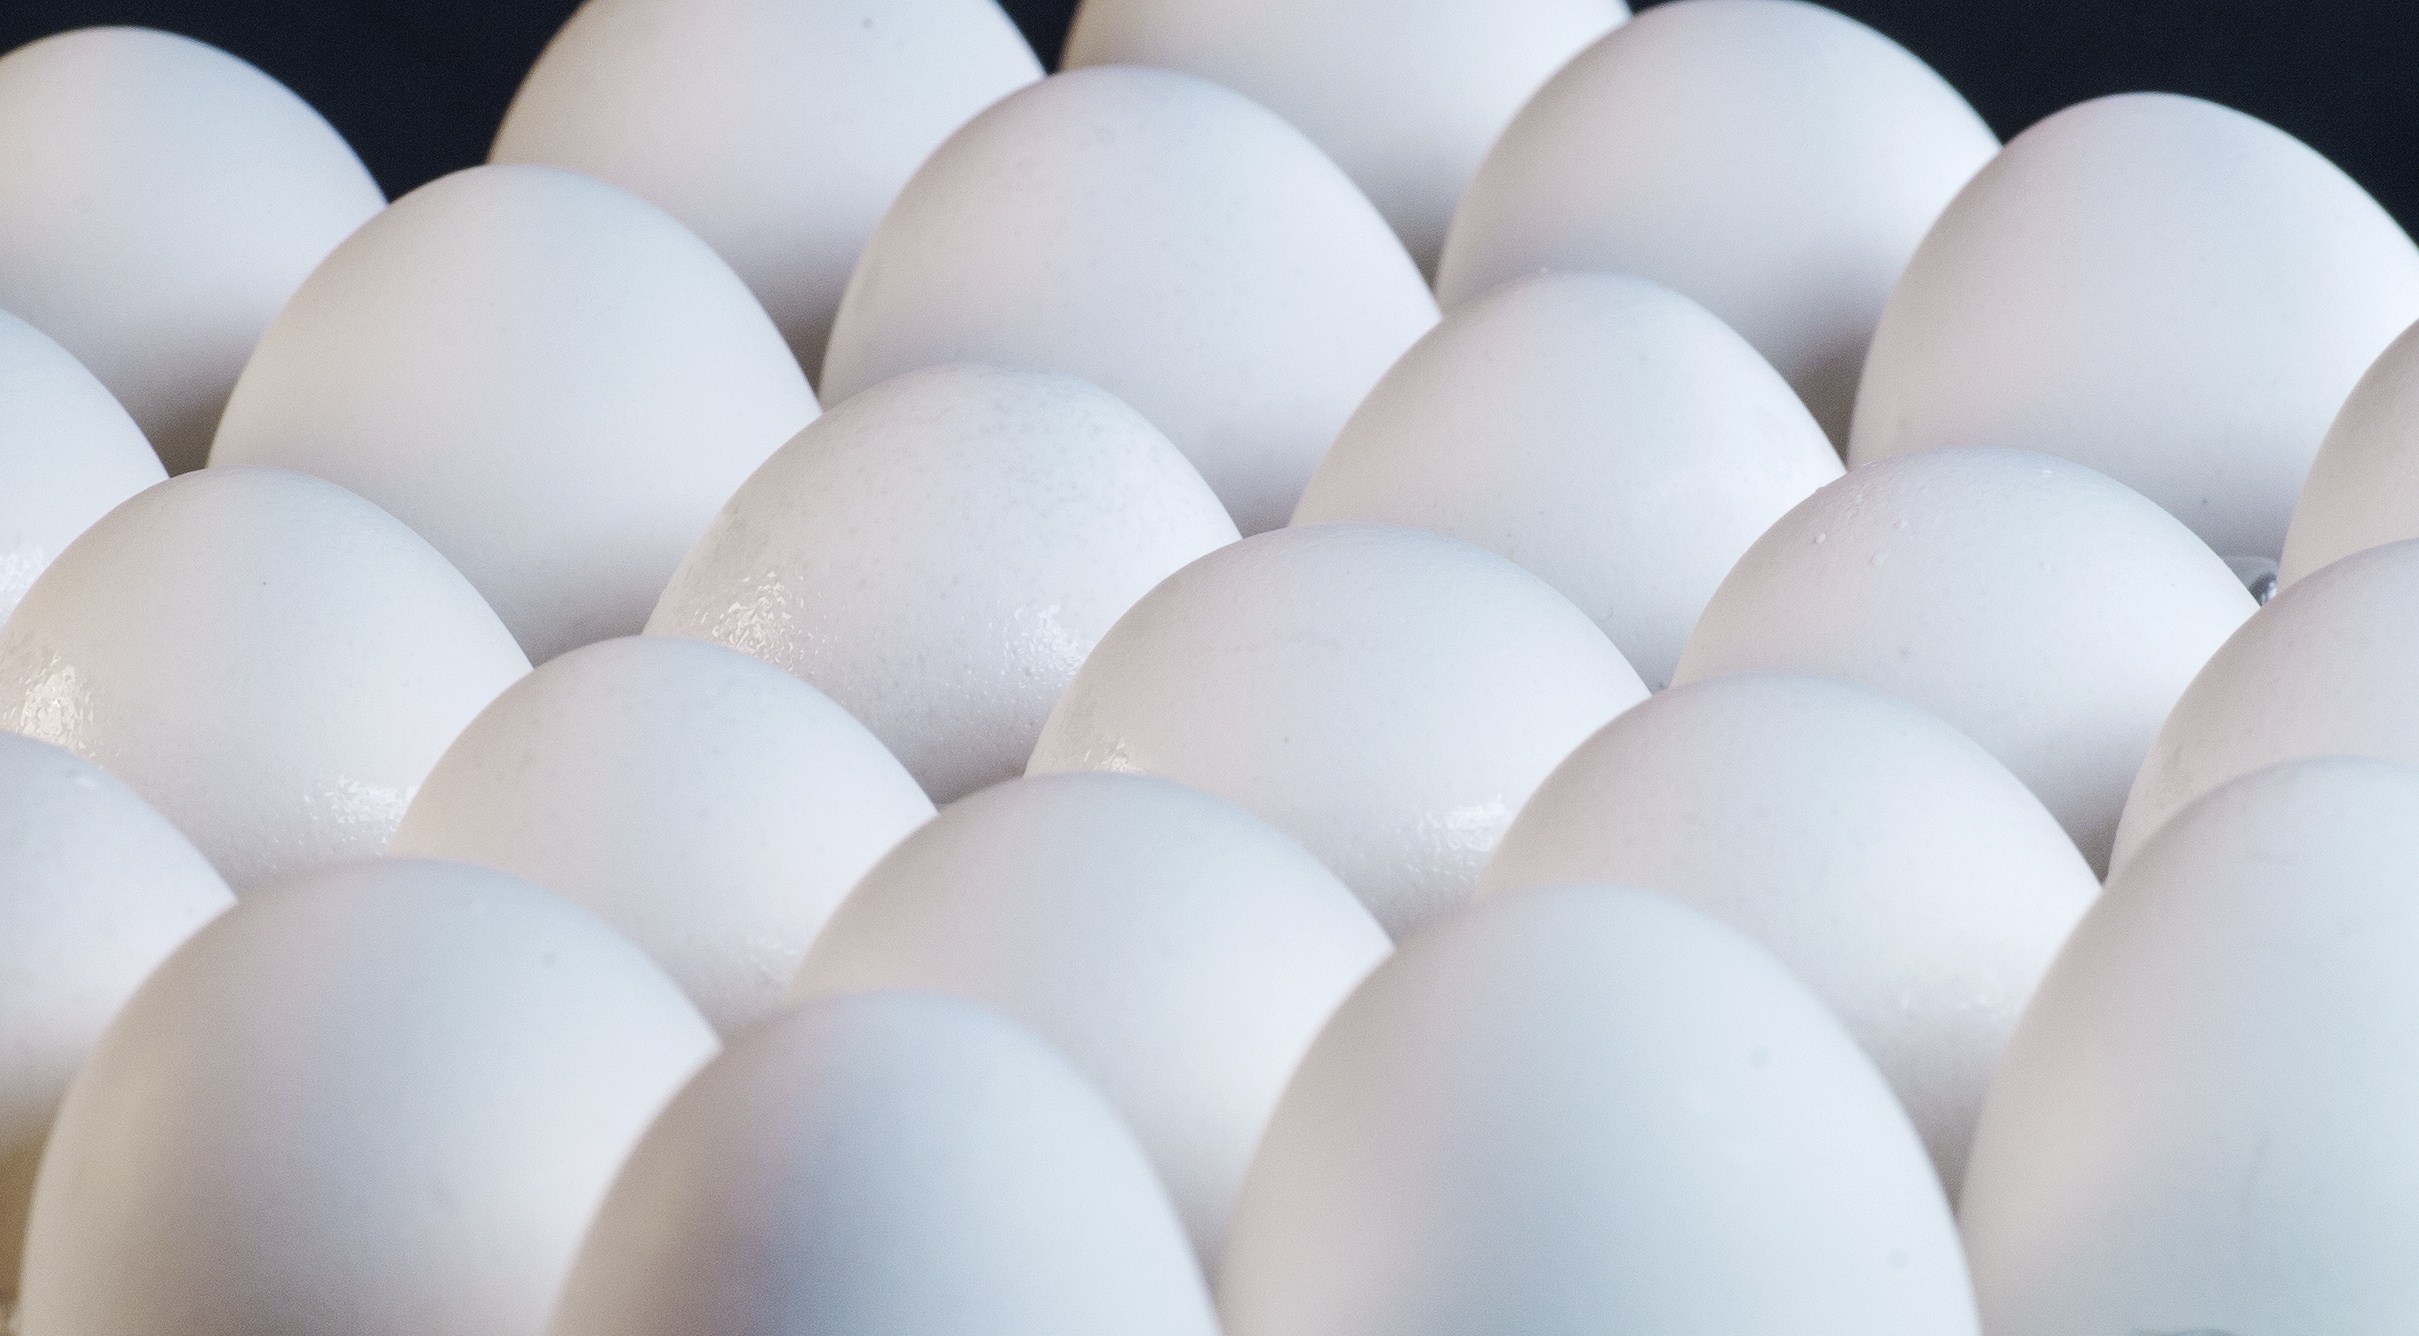 El huevo es un producto de consumo básico en México.